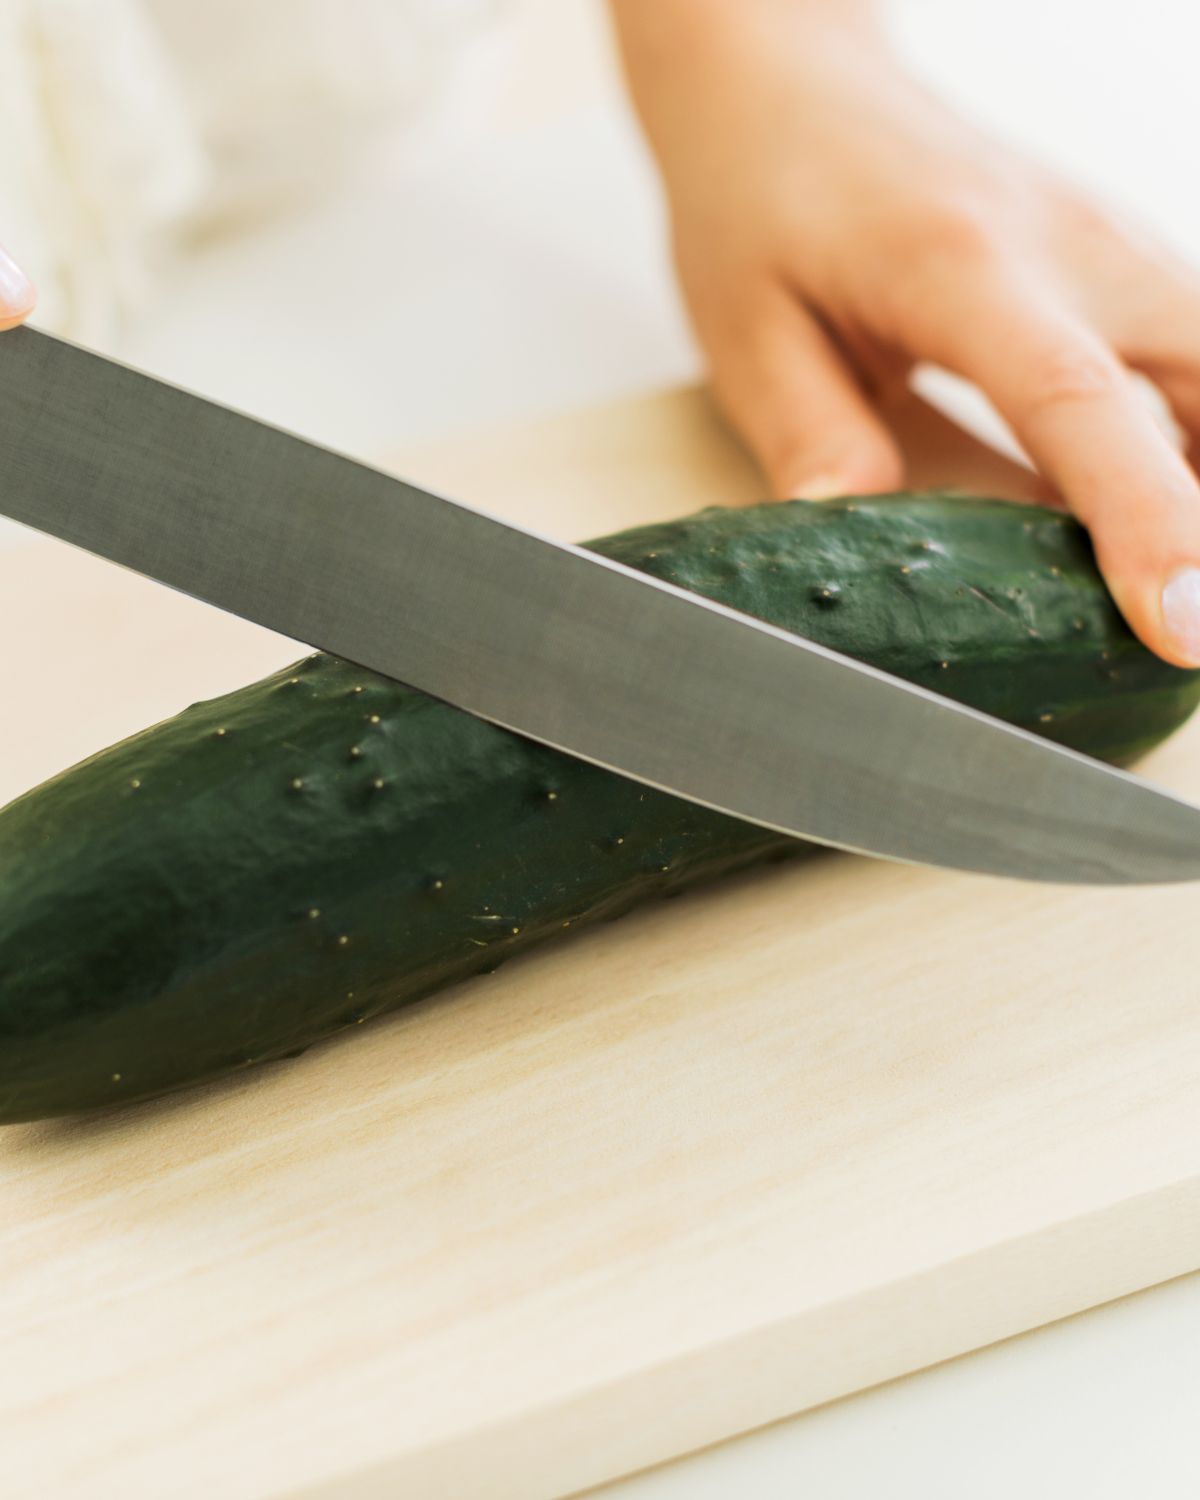 Slicing a cucumber.